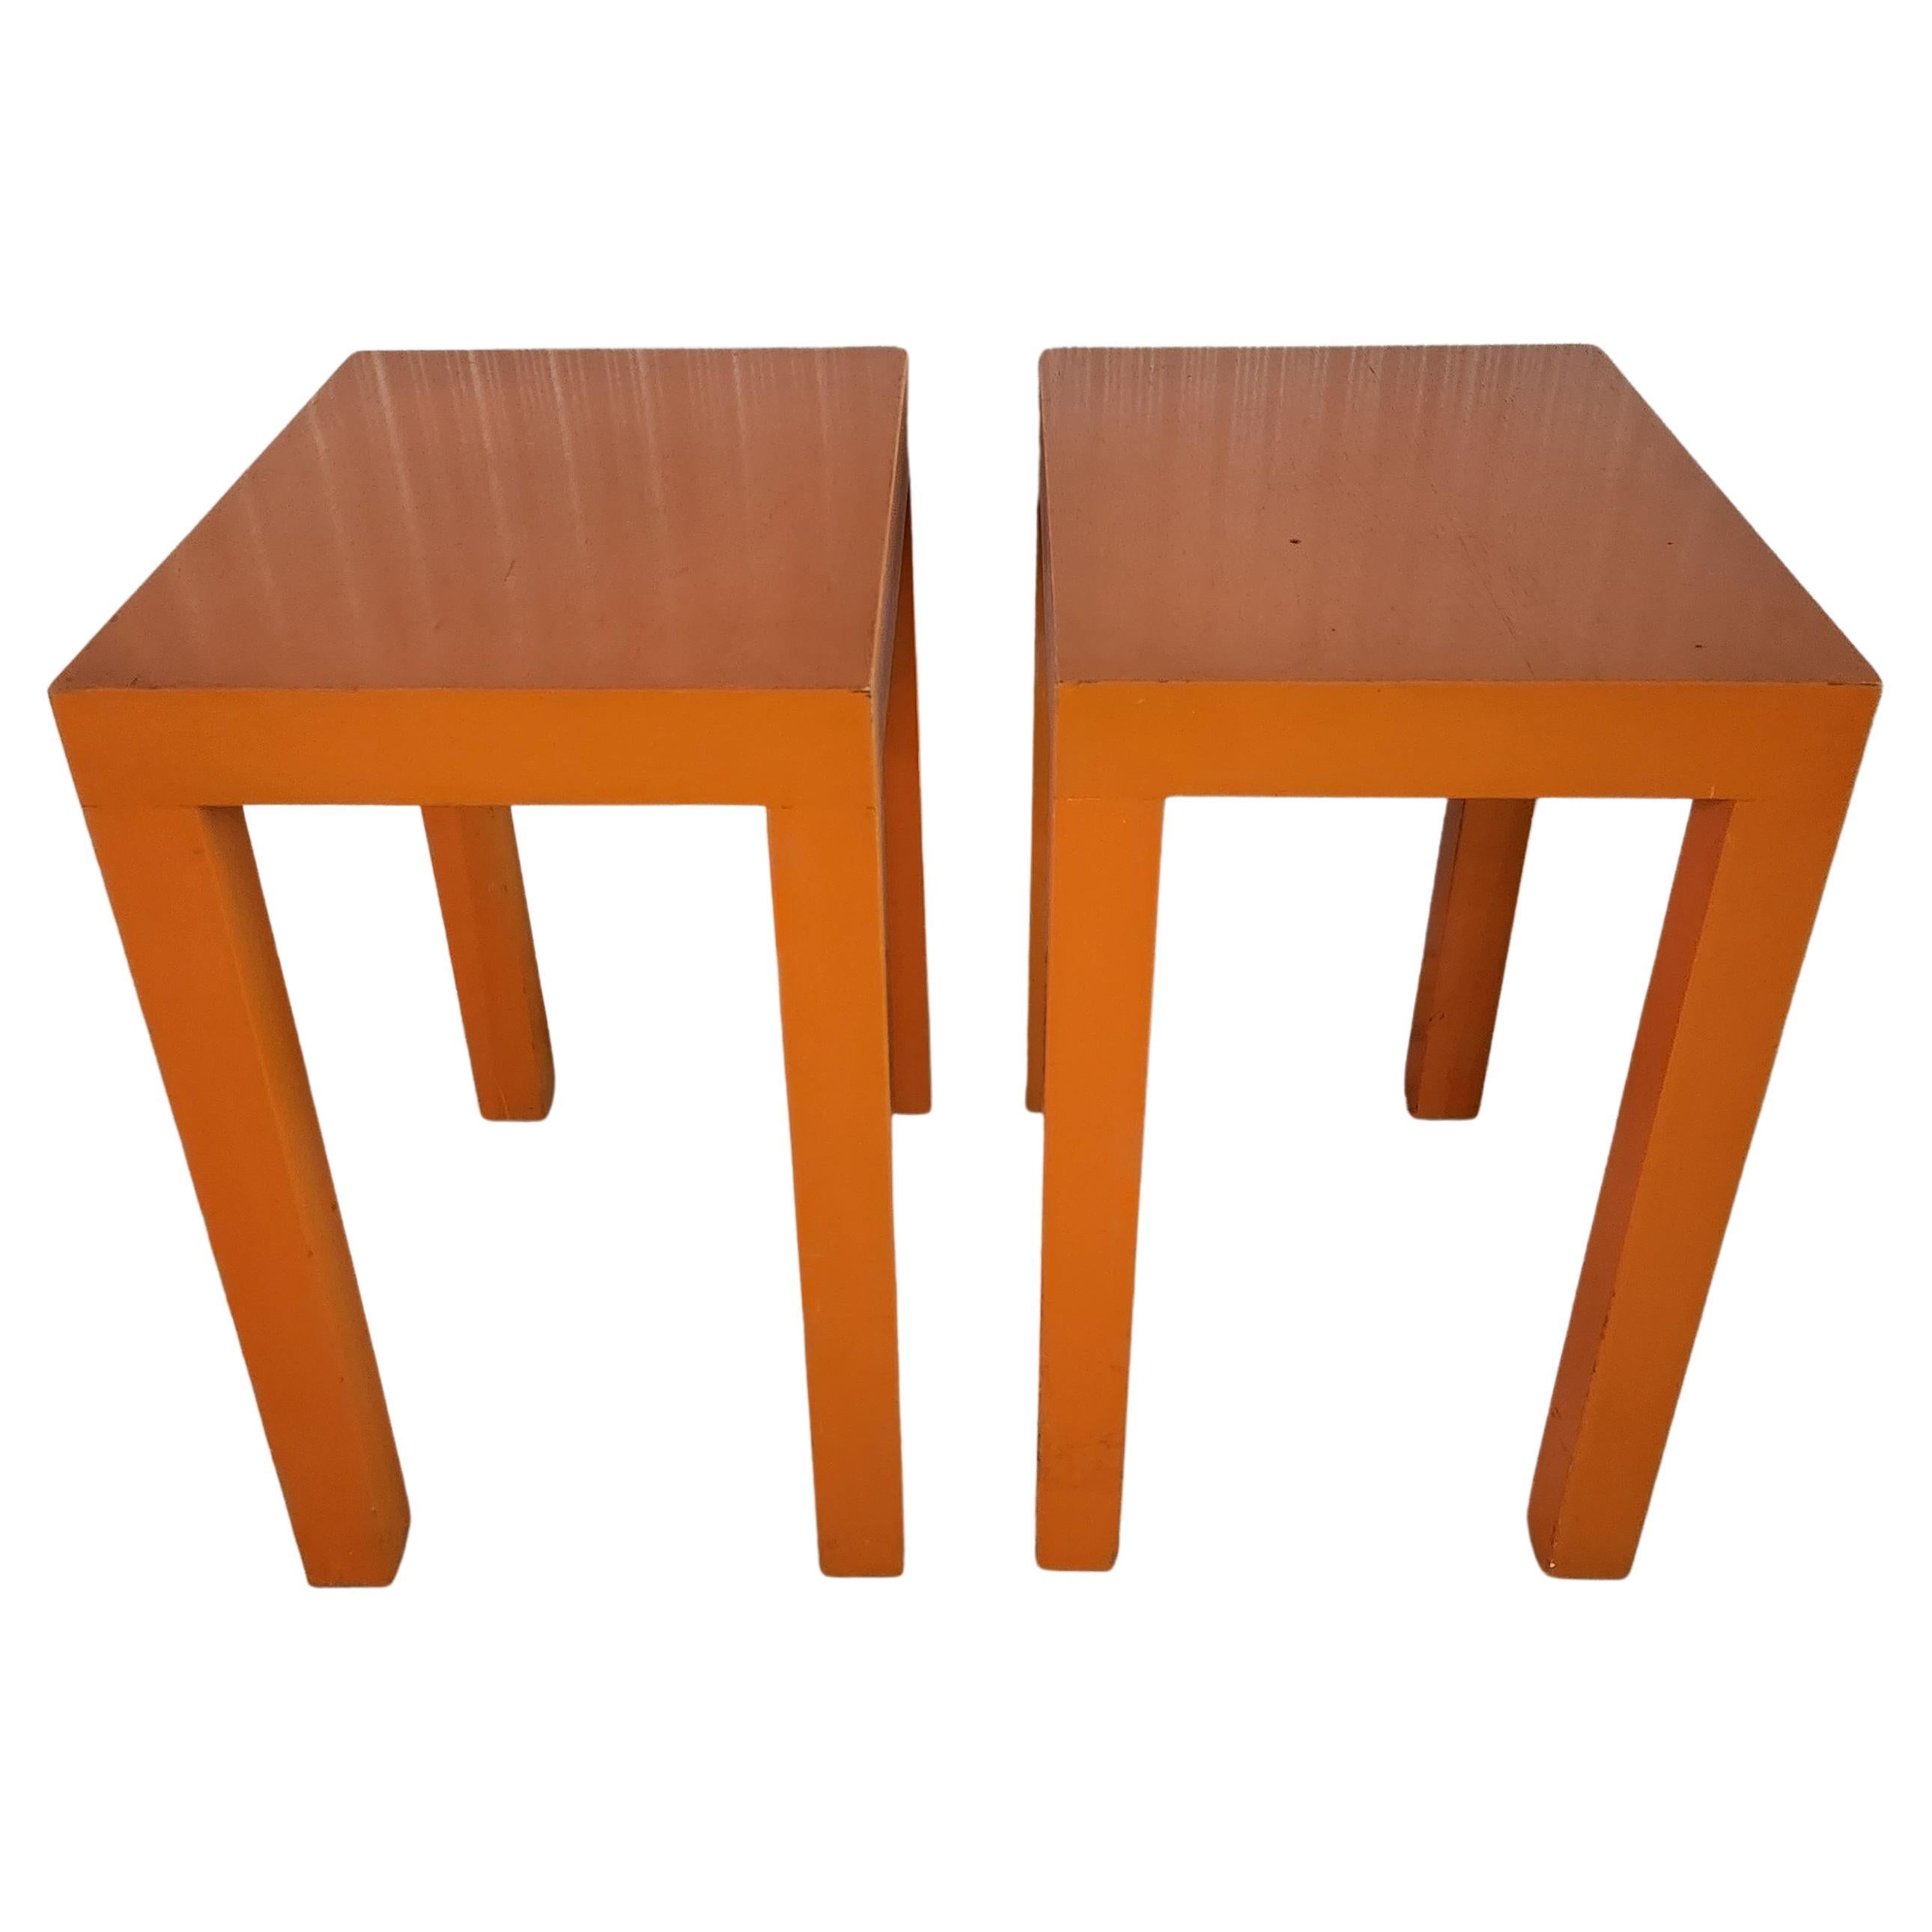 1970s Vintage Mod Wood Parsons Orange Side Tables Rectangular Color Pop